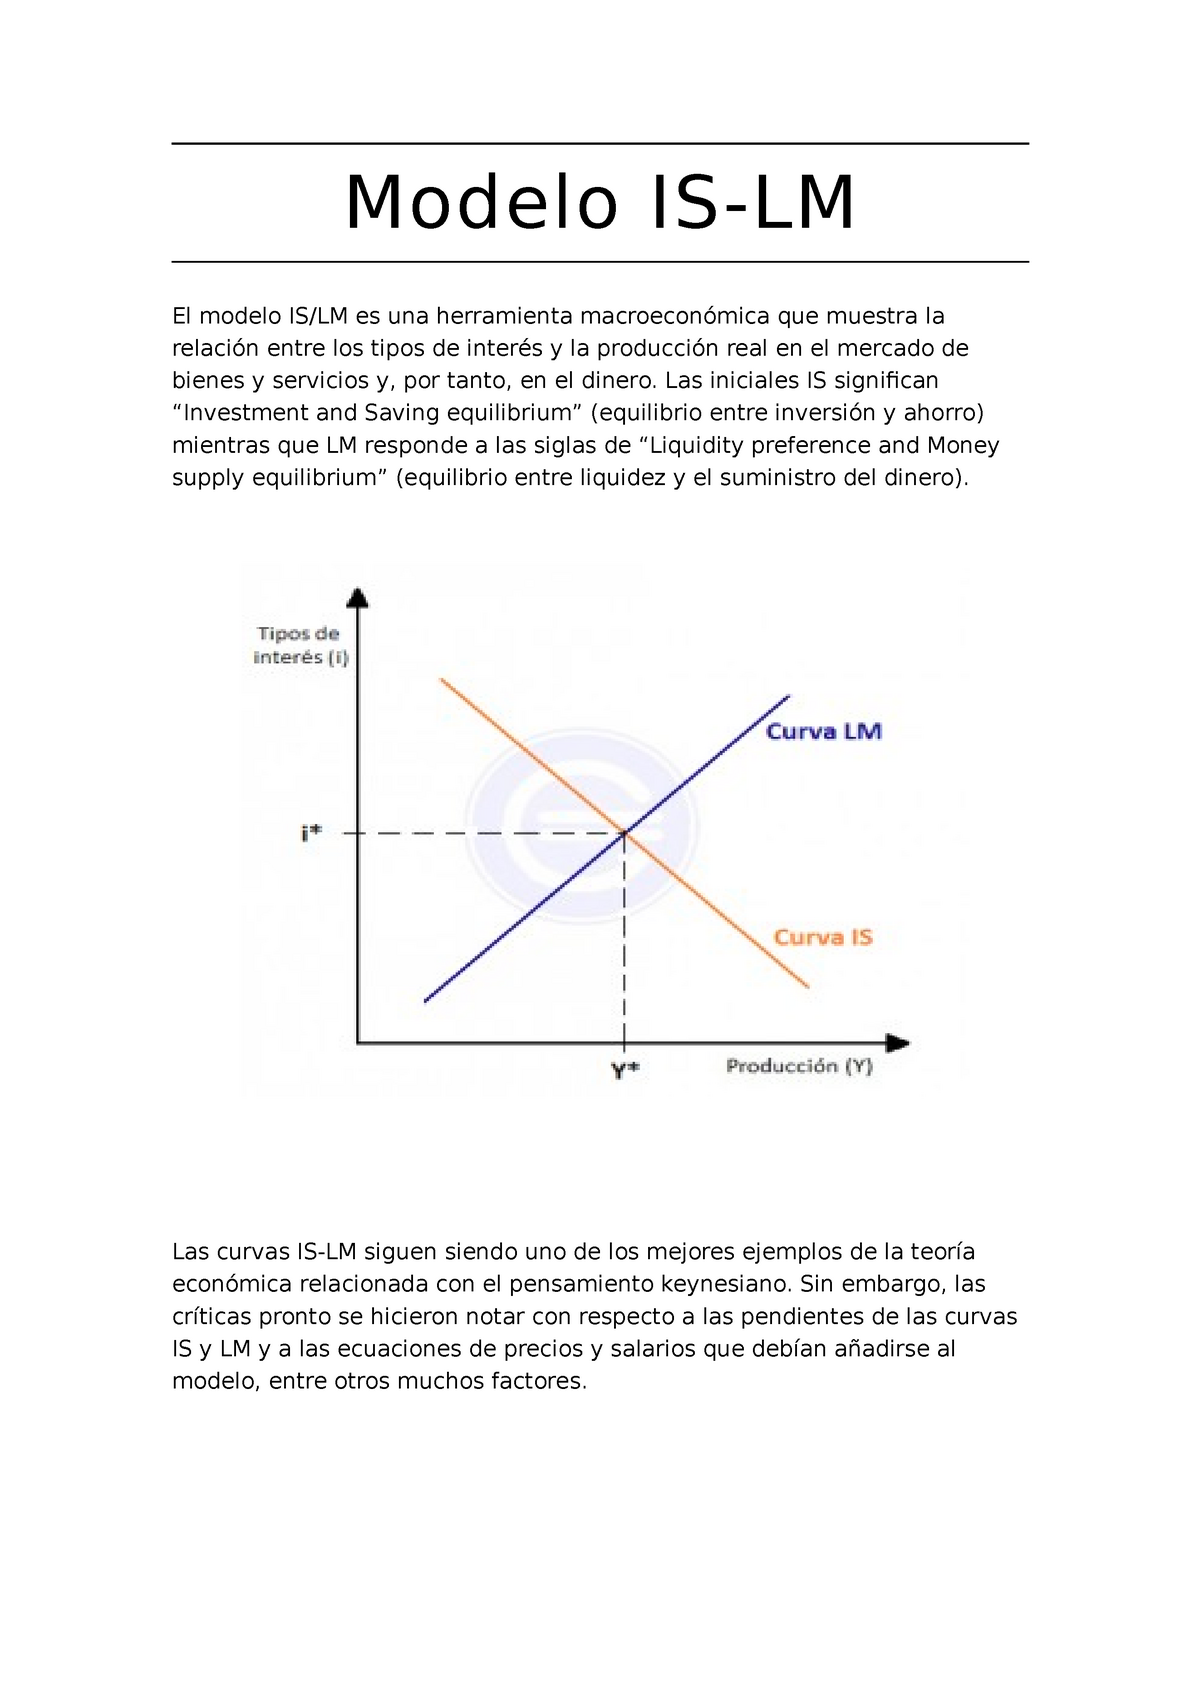 Modelo IS - LM Macroeconomia - Modelo IS-LM El modelo IS/LM es una  herramienta macroeconómica que - Studocu